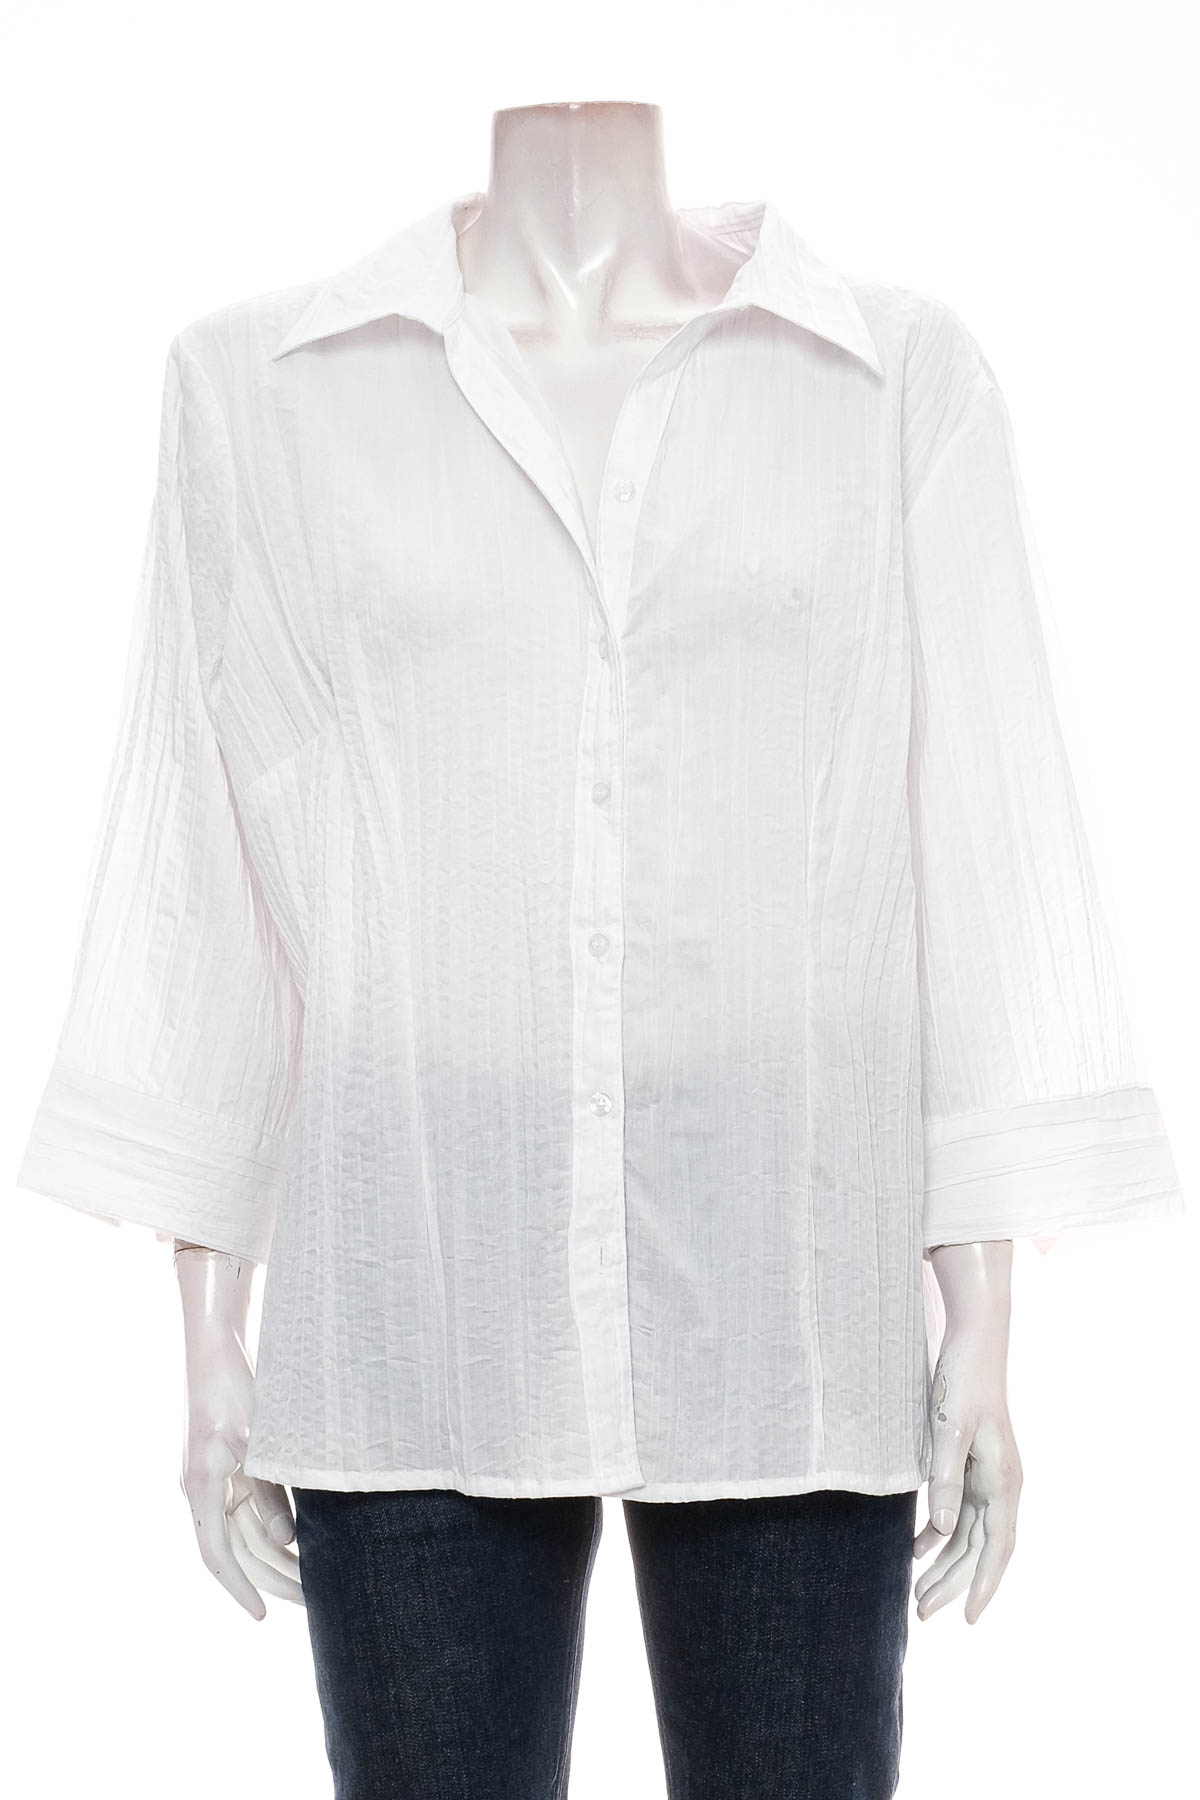 Γυναικείо πουκάμισο - Michele Boyard - 0